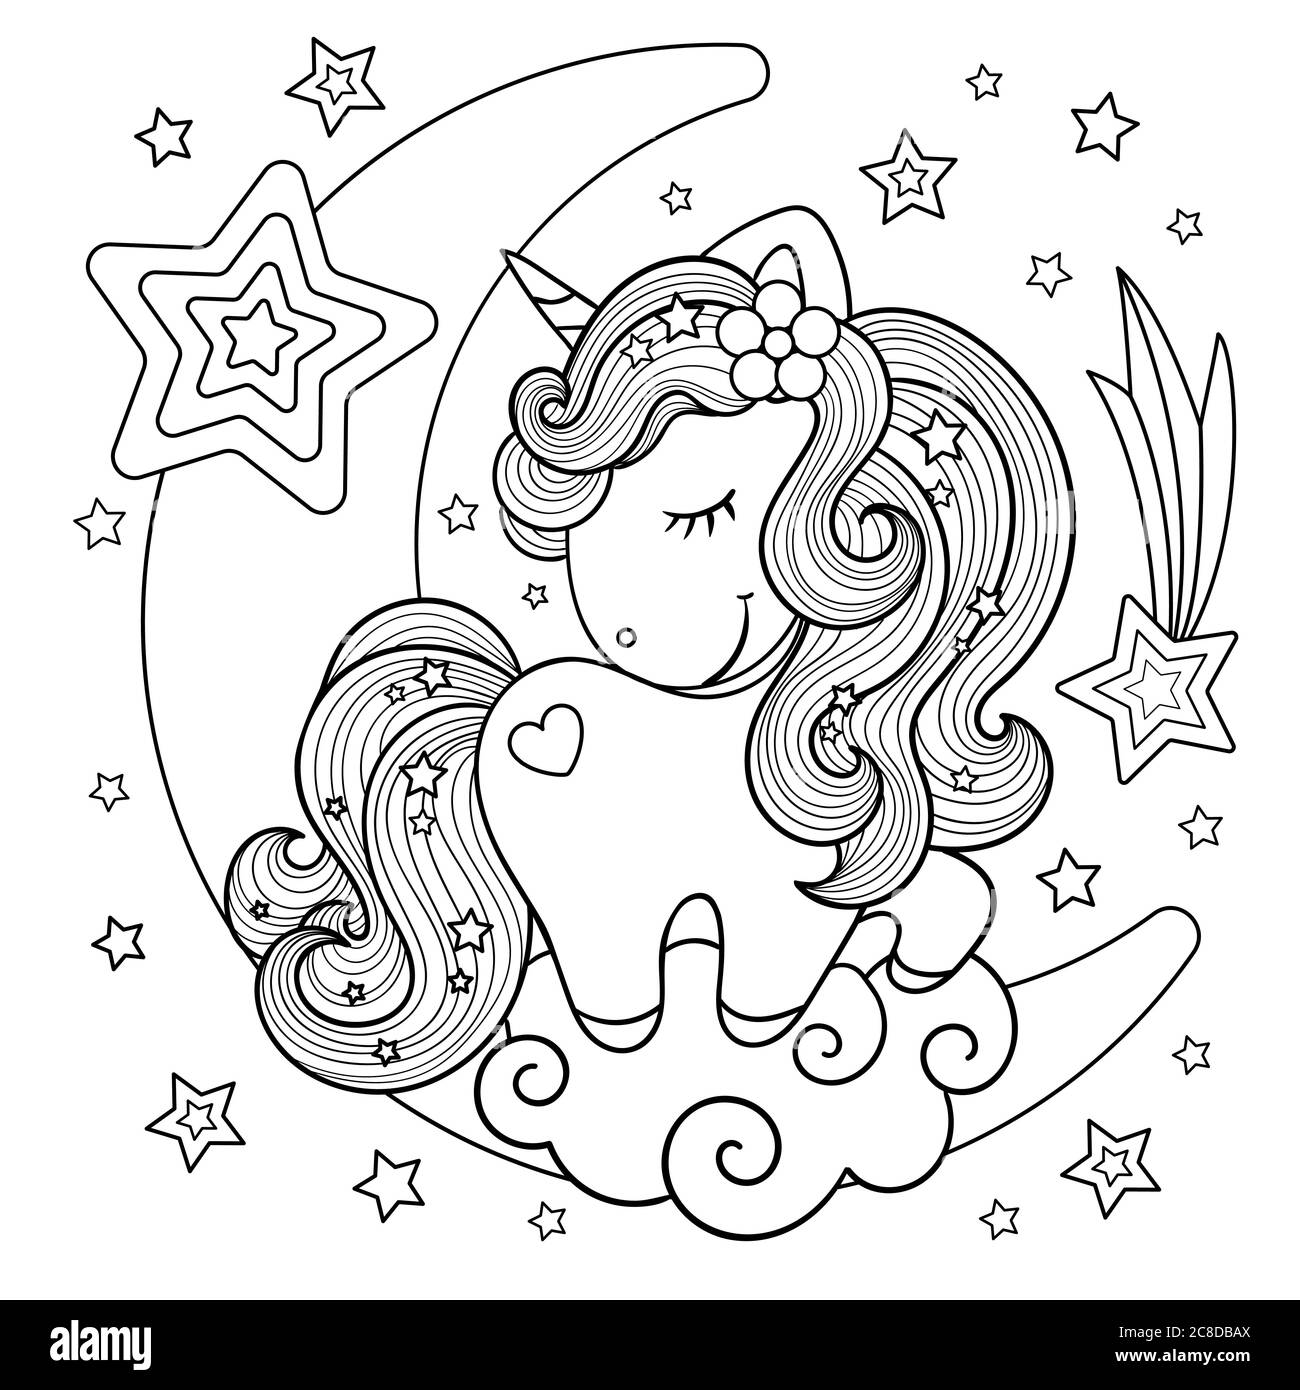 Carino, unicorno cartoon sulla luna. Bianco e nero. Disegnato a mano. Disegno per bambini, per stampe, poster, libri da colorare, adesivi, cartoncini e così via. Illustrazione Vettoriale